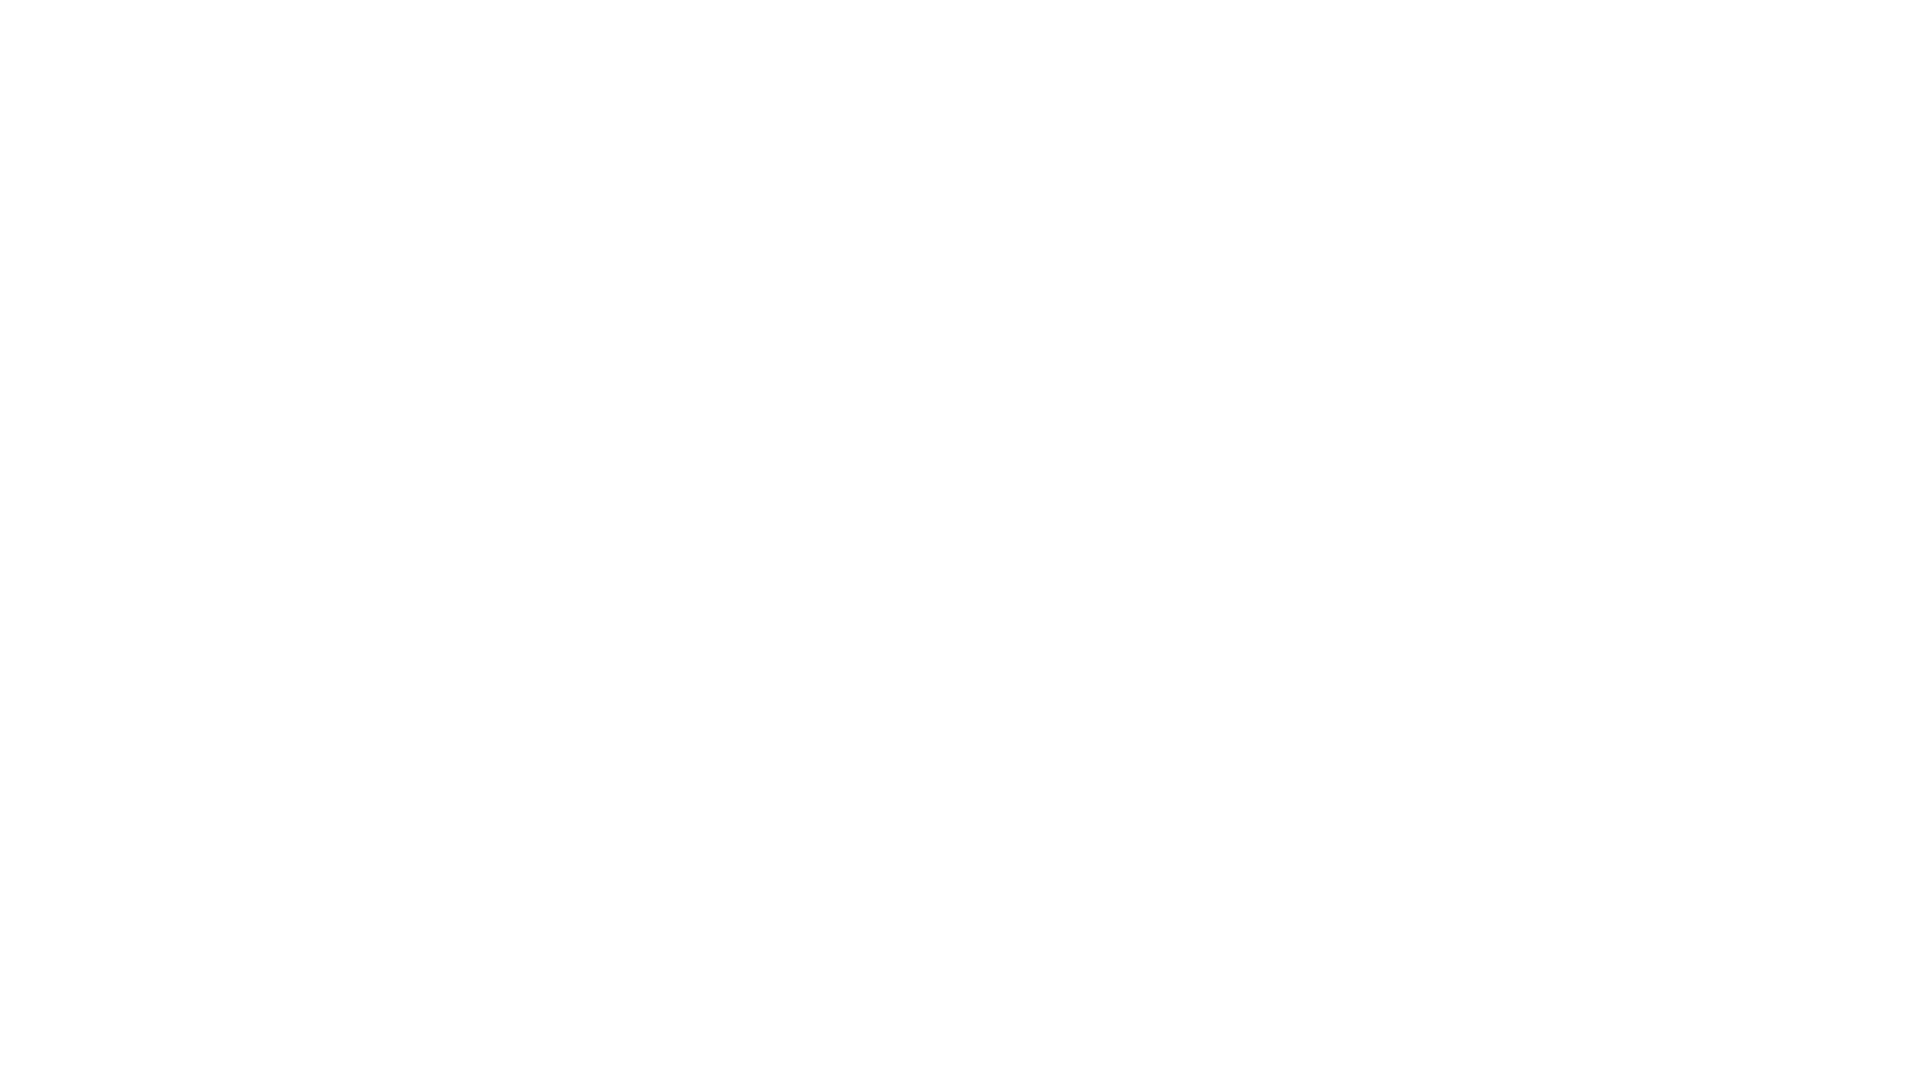 Get Heard! Coaching